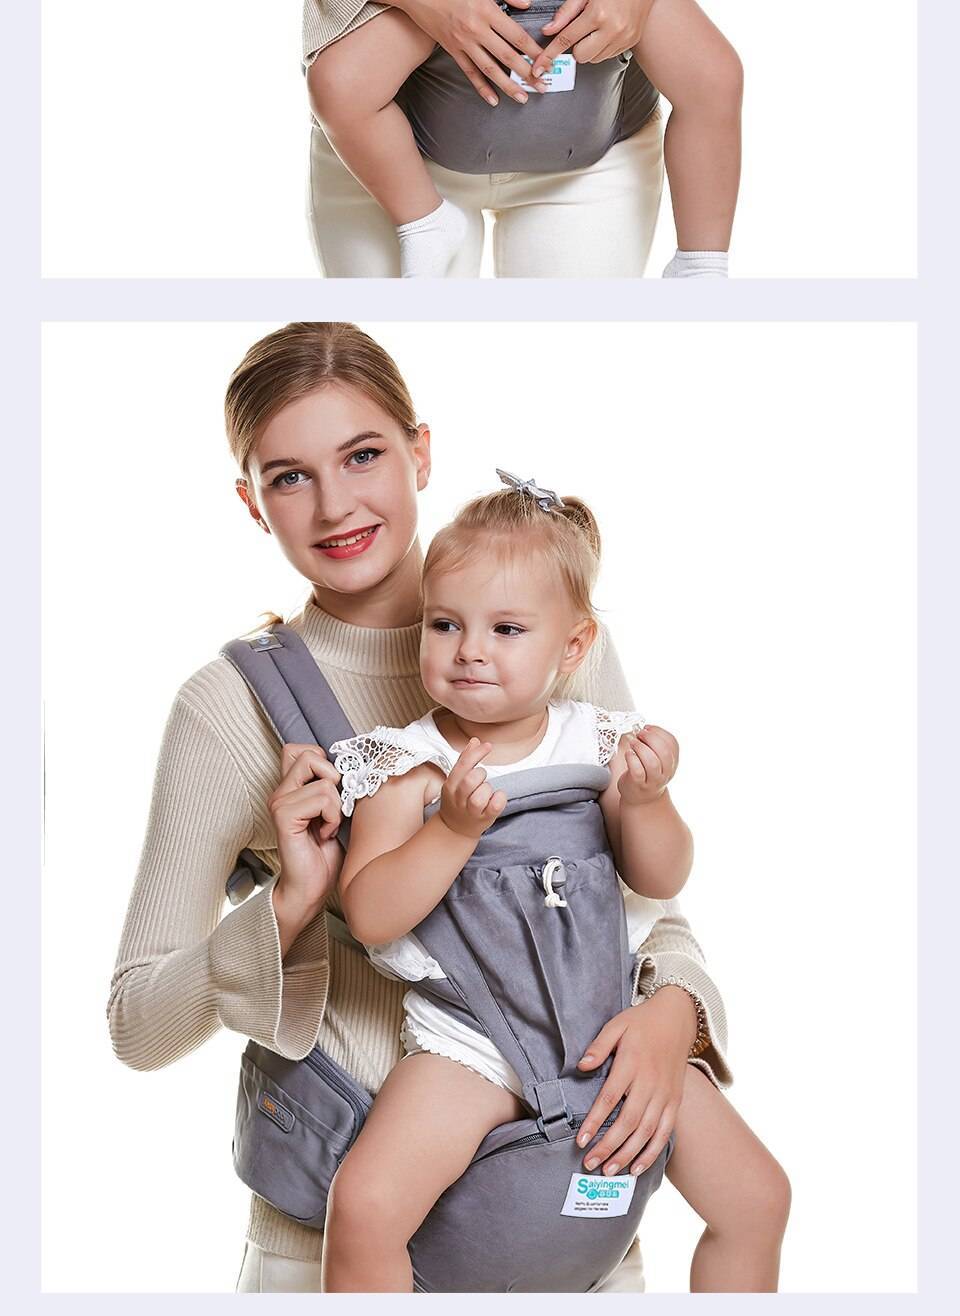 Кенгуру для новорожденных от 0 до 6 месяцев: фото сумки-рюкзака, как одевать?